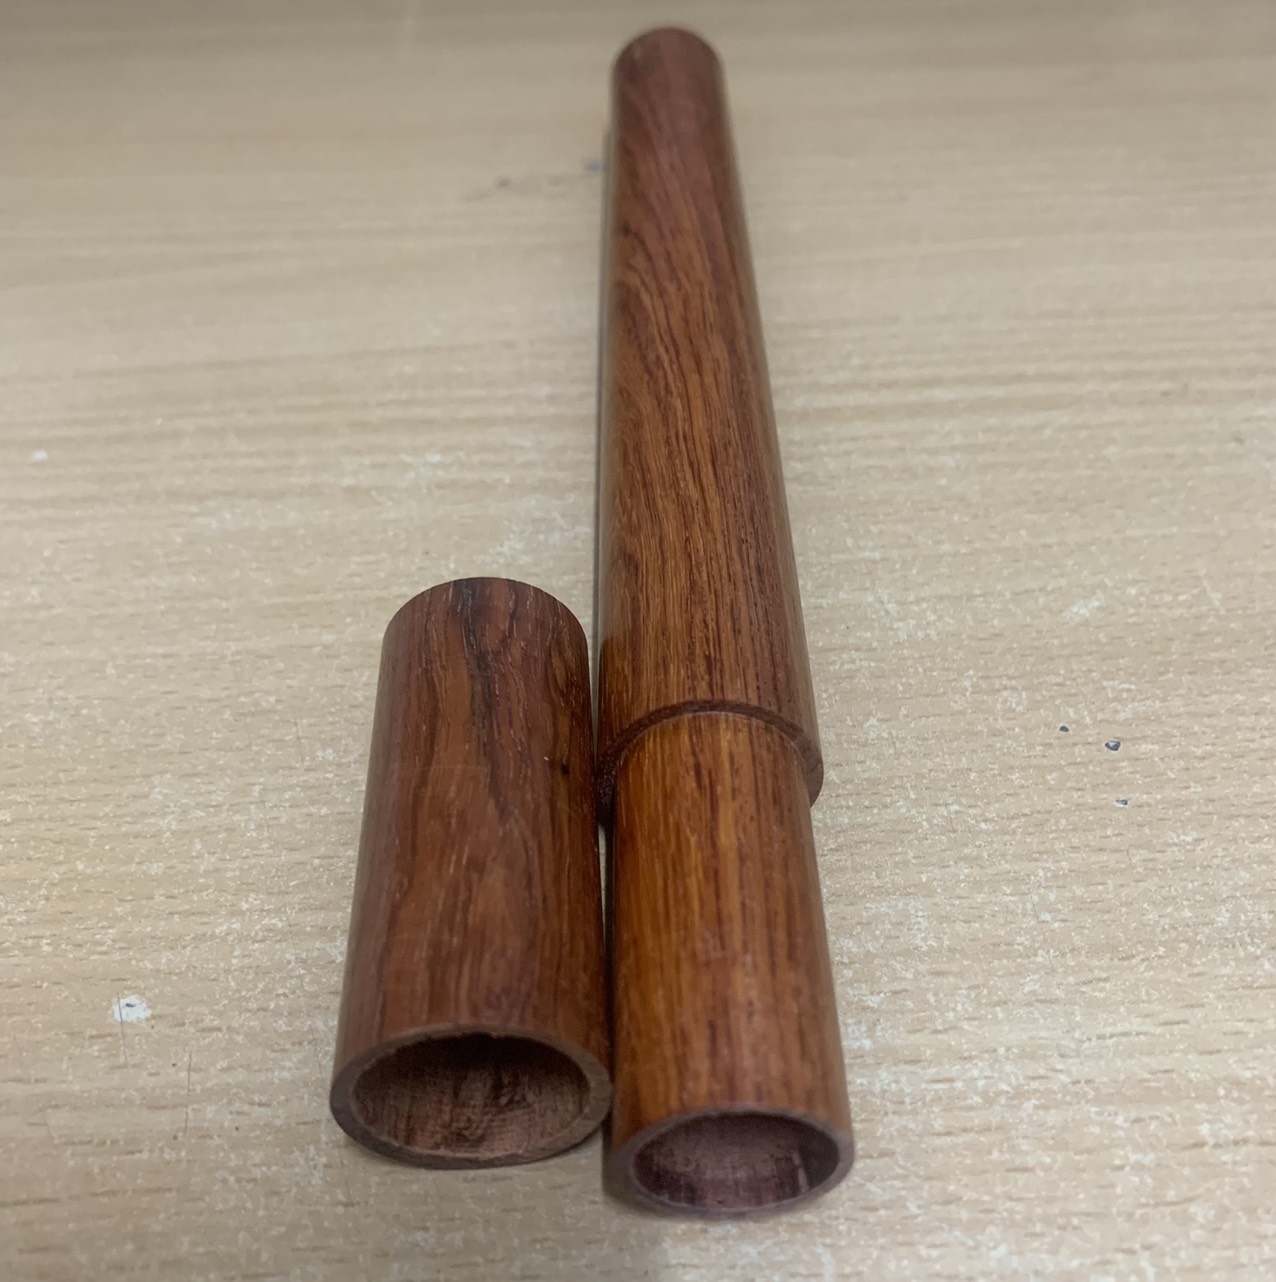 Vỏ ống gỗ chứa nhang tăm